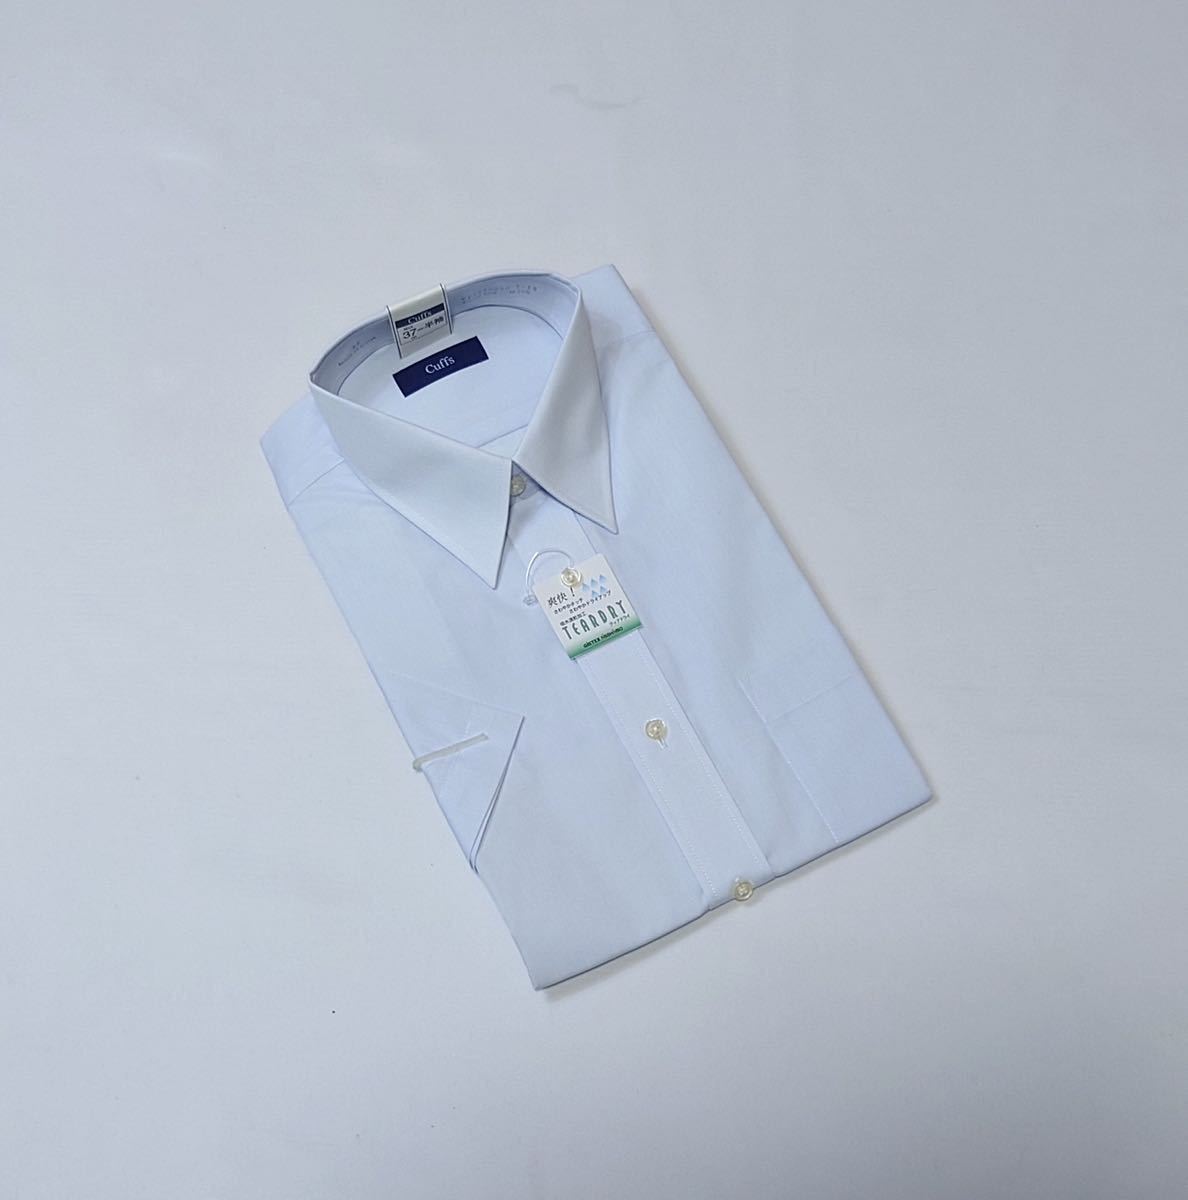 (未使用) CUFFS // GRANCASA COLLECTION / 吸水 速乾 半袖 ティアドライ シャツ・ワイシャツ (白) サイズ 37-S_画像6